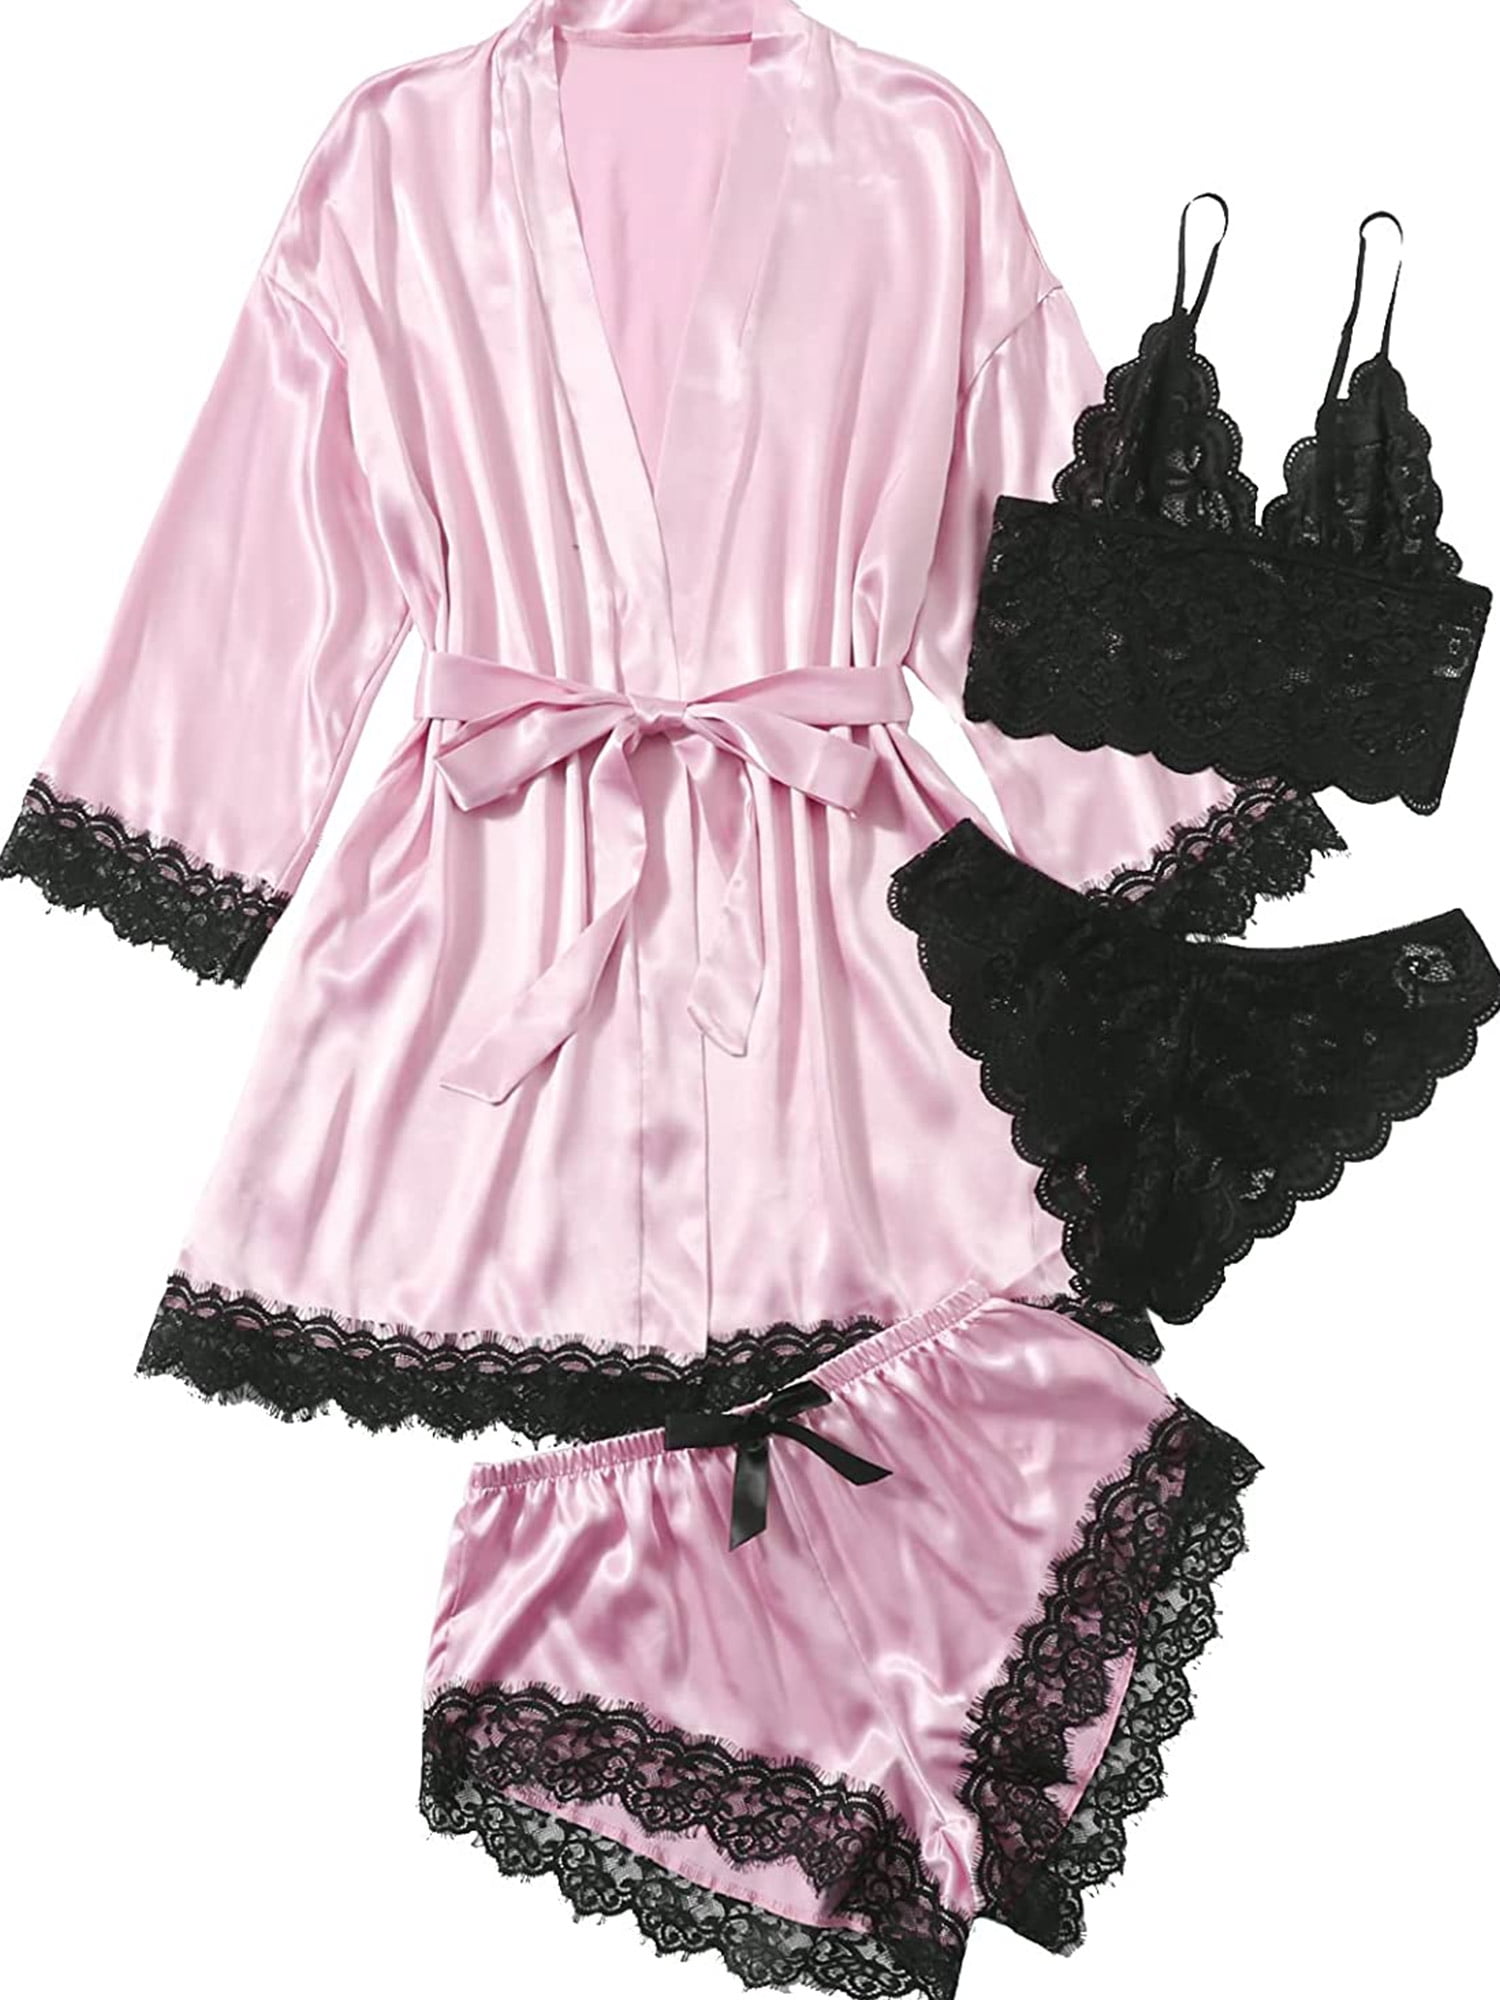 popiv Women's 4 Pieces Satin Floral Lace Cami Top Lingerie Pajama Set ...